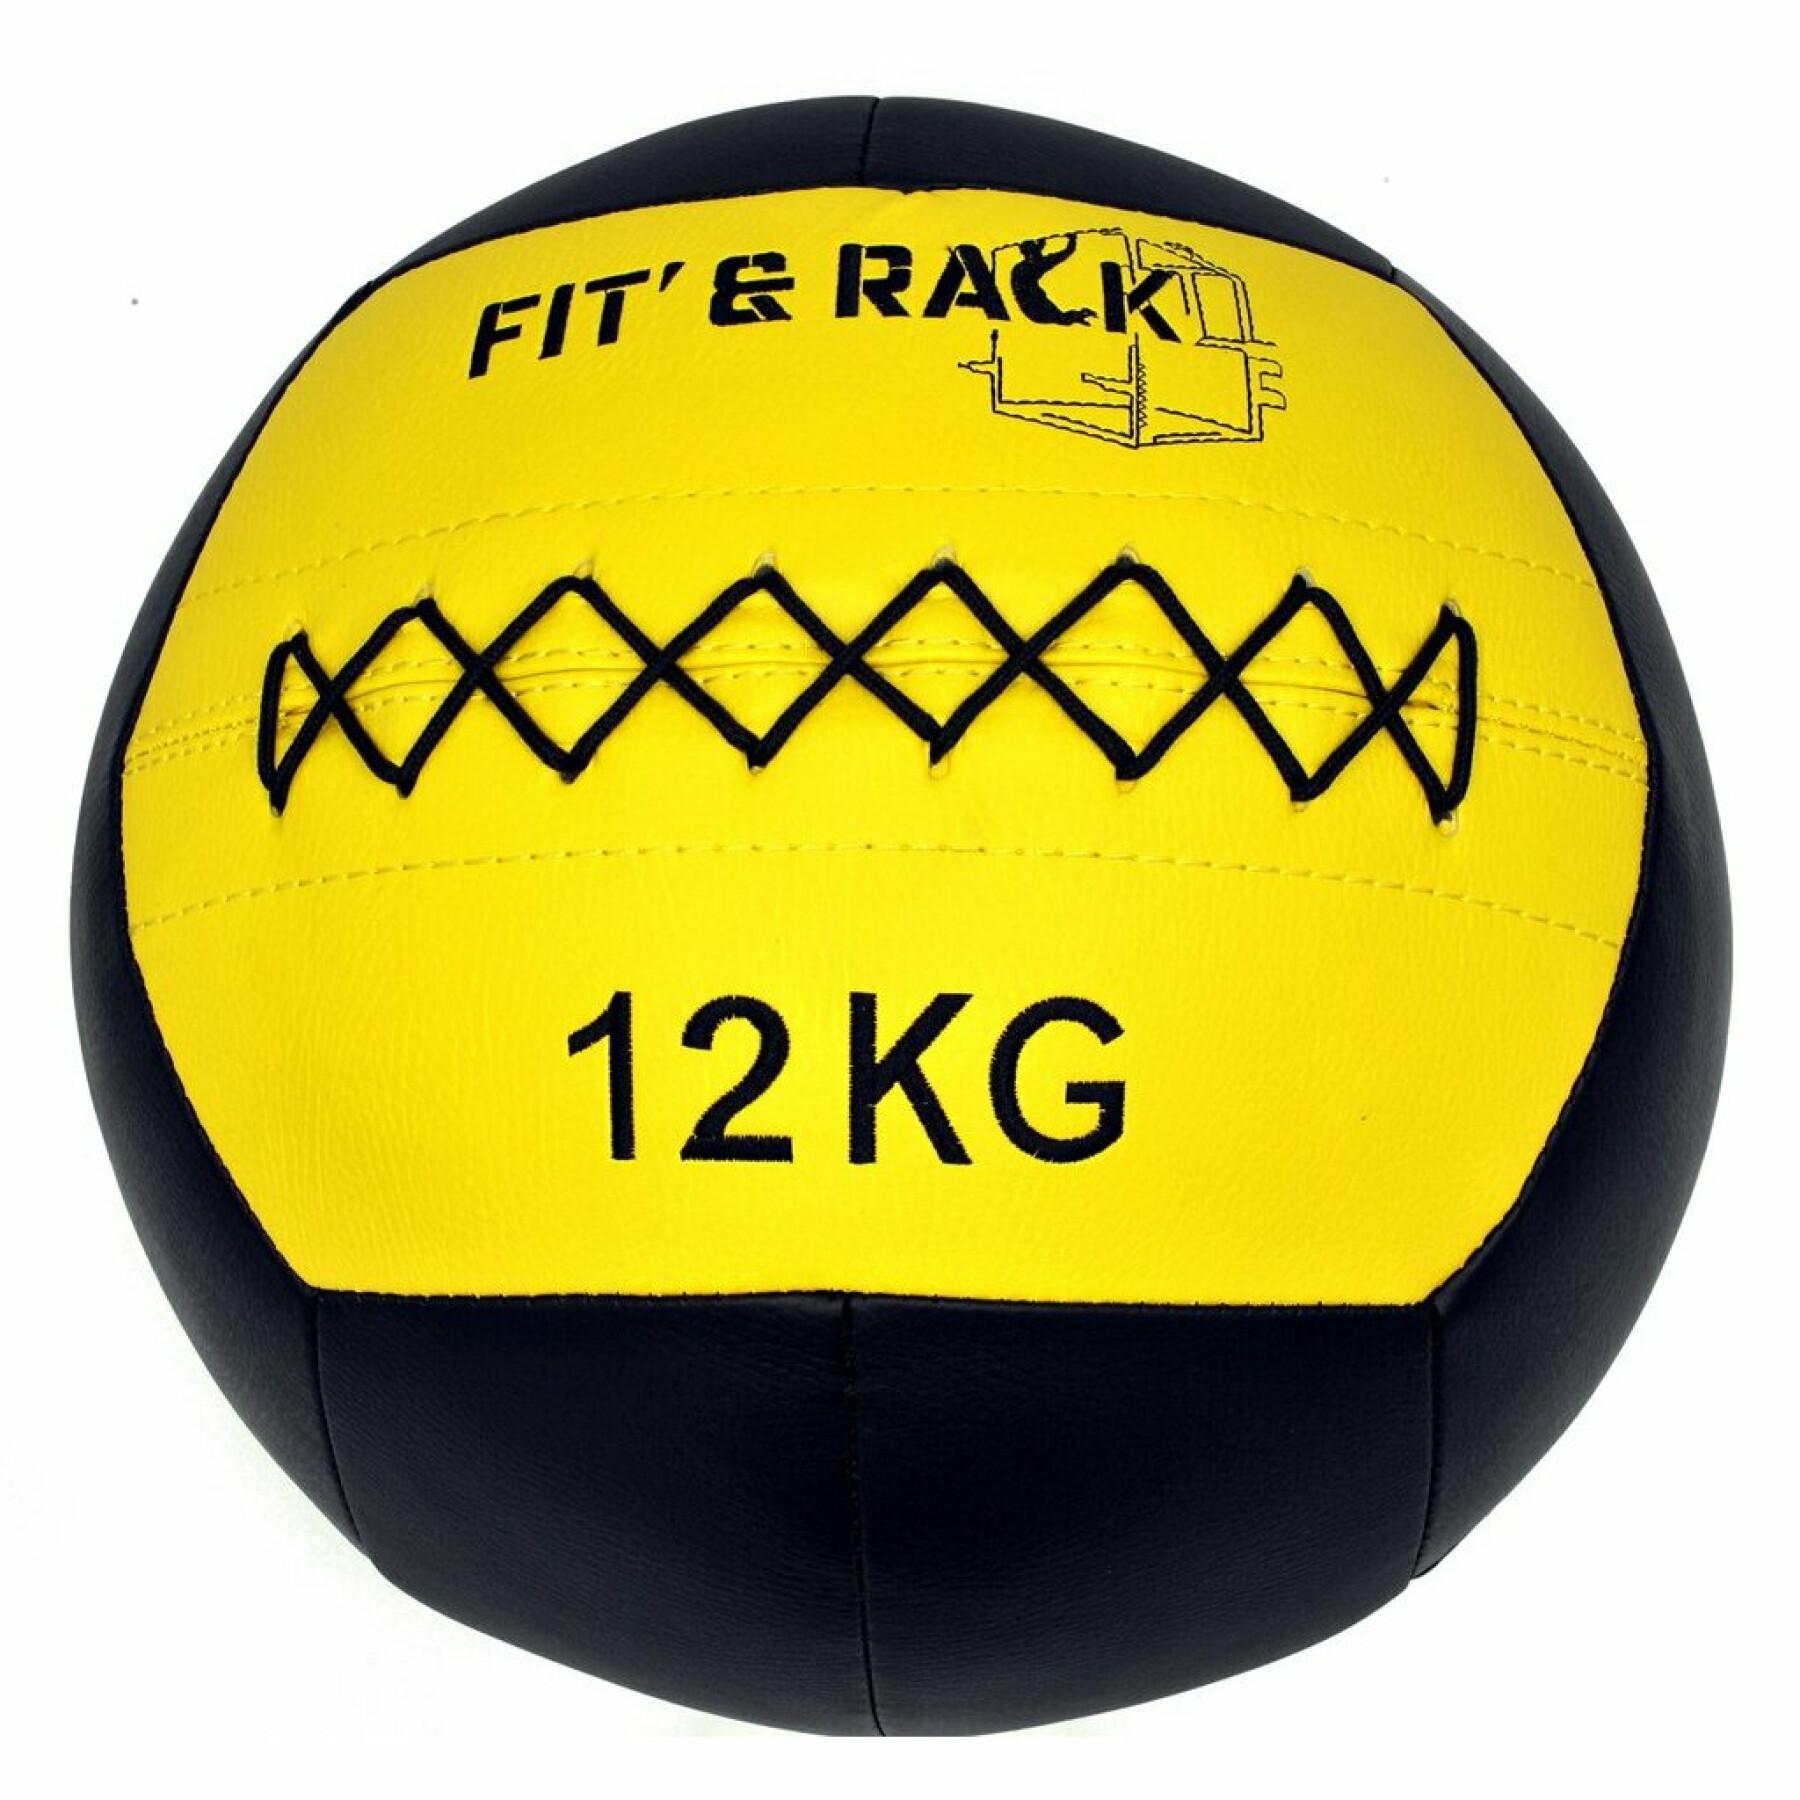 Concurso de bola de parede Fit & Rack 12 Kg